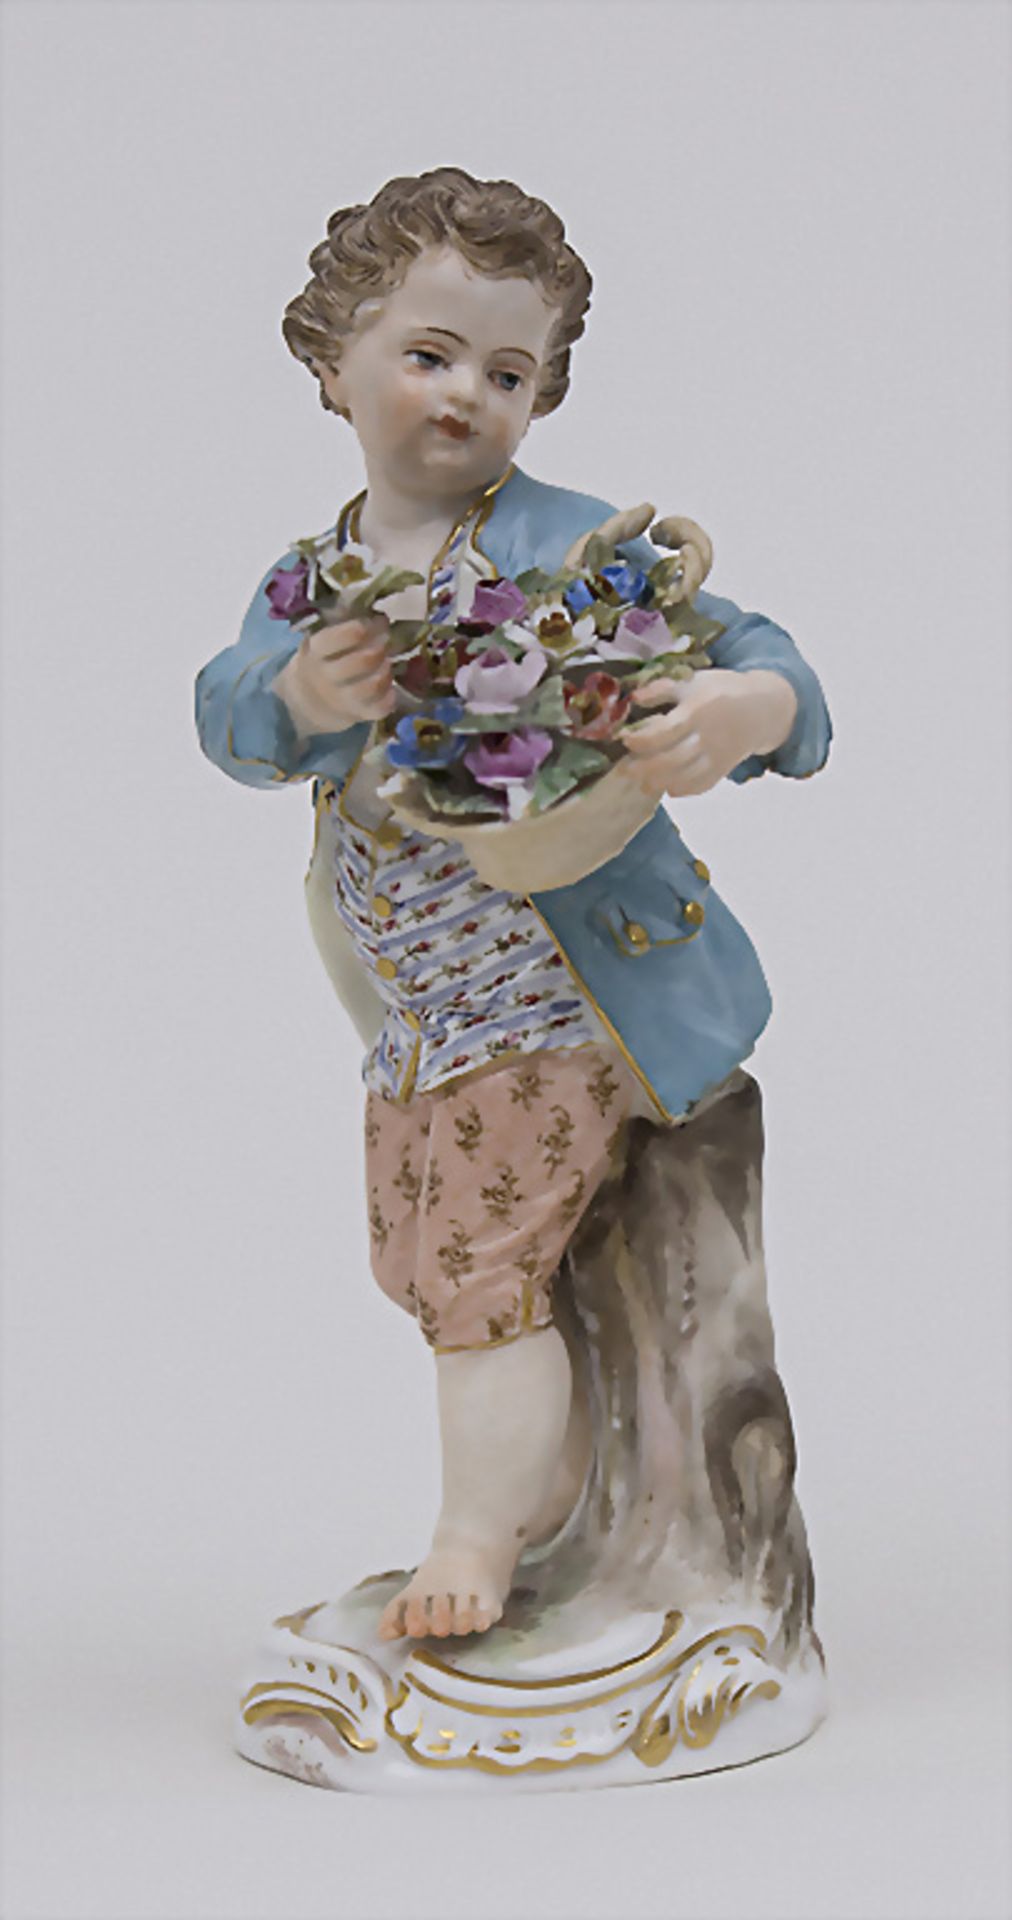 Gärtnerkind 'Junge mit Blumenkorb' / A gardener's child 'boy with flower basket', Meissen, ...